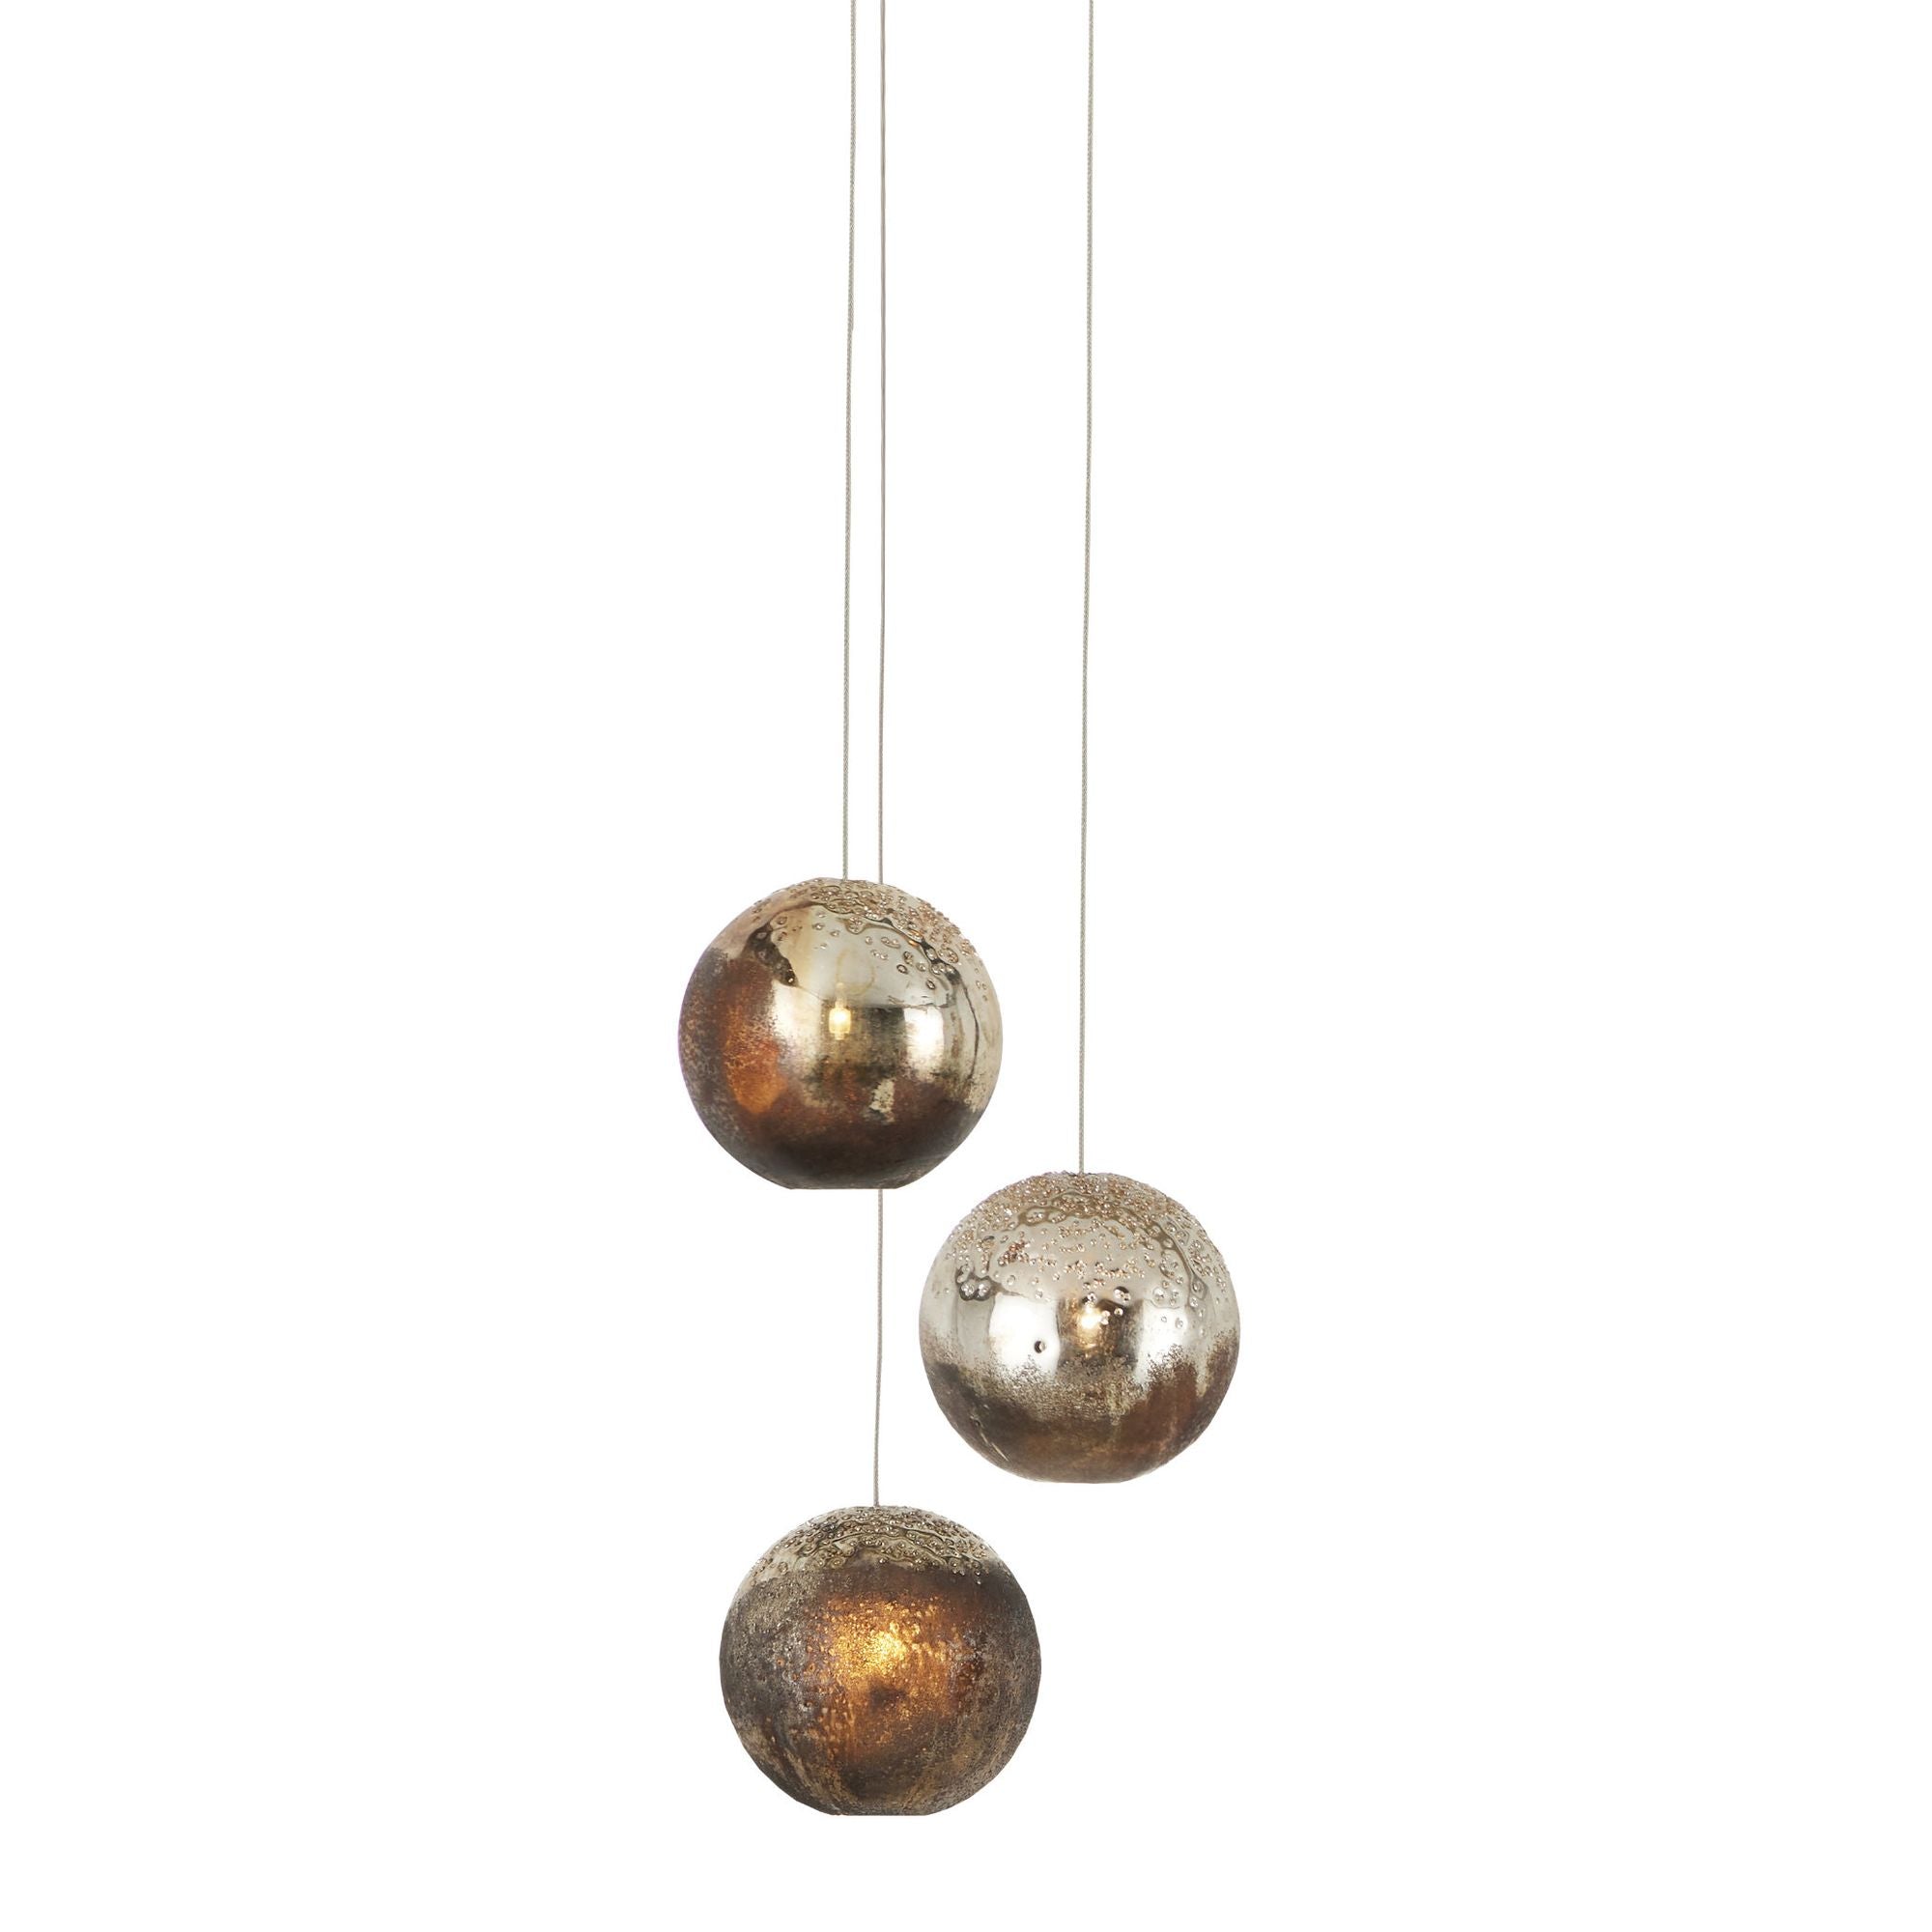 Pathos 3-Light Round Multi-Drop Pendant - Antique Silver/Antique Gold/Matte Charcoal/Silver